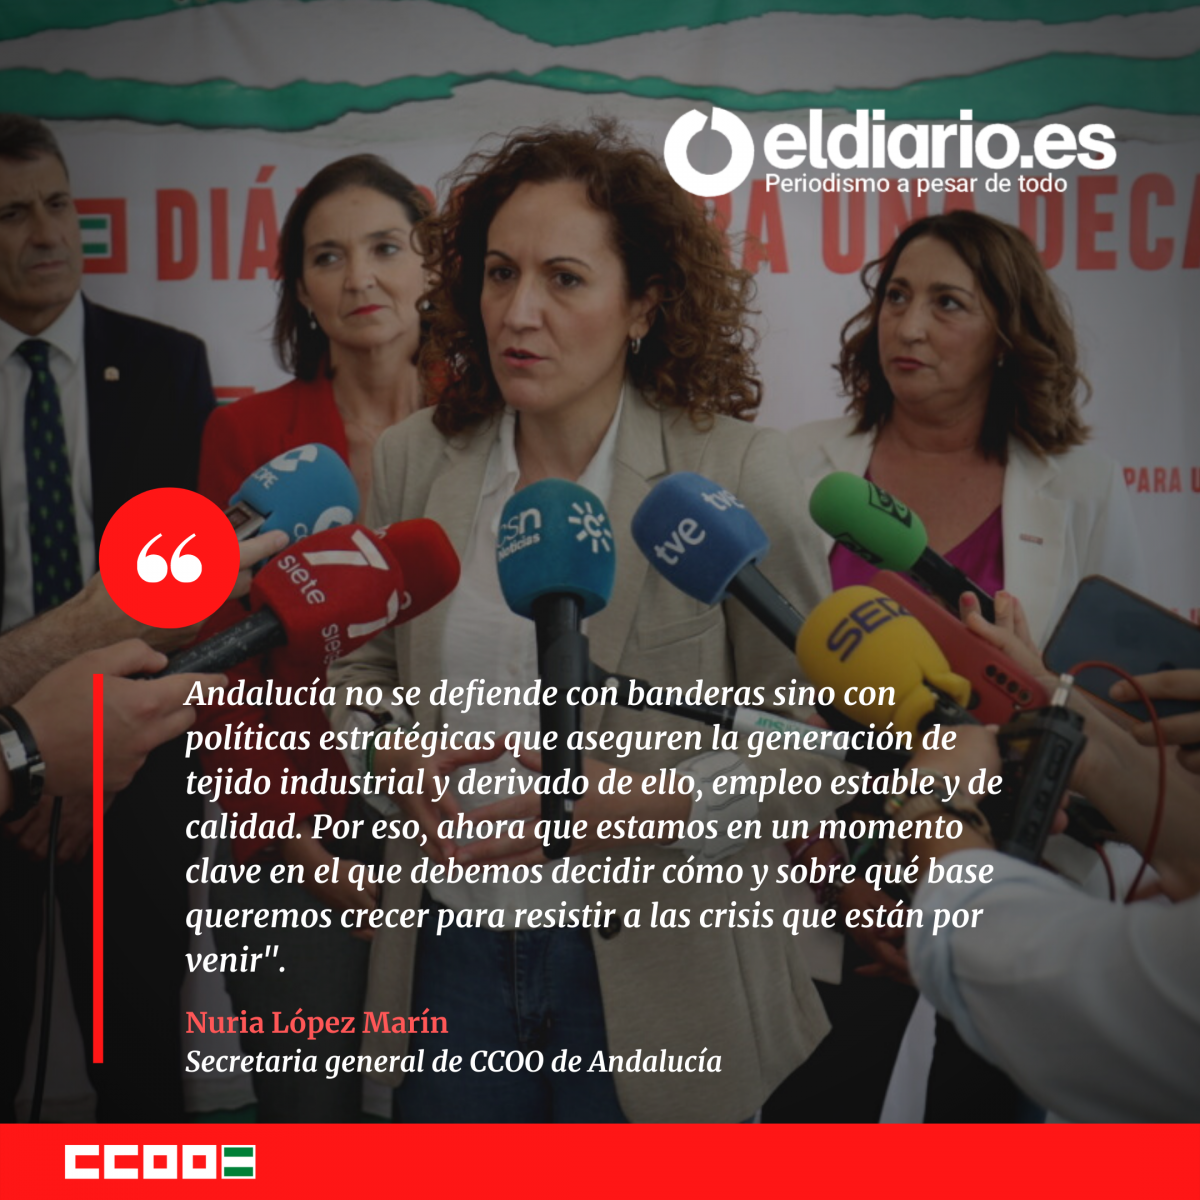 Artículo de Nuria López Marin, secretaria general de CCOO de Andalucía, para eldiario.es